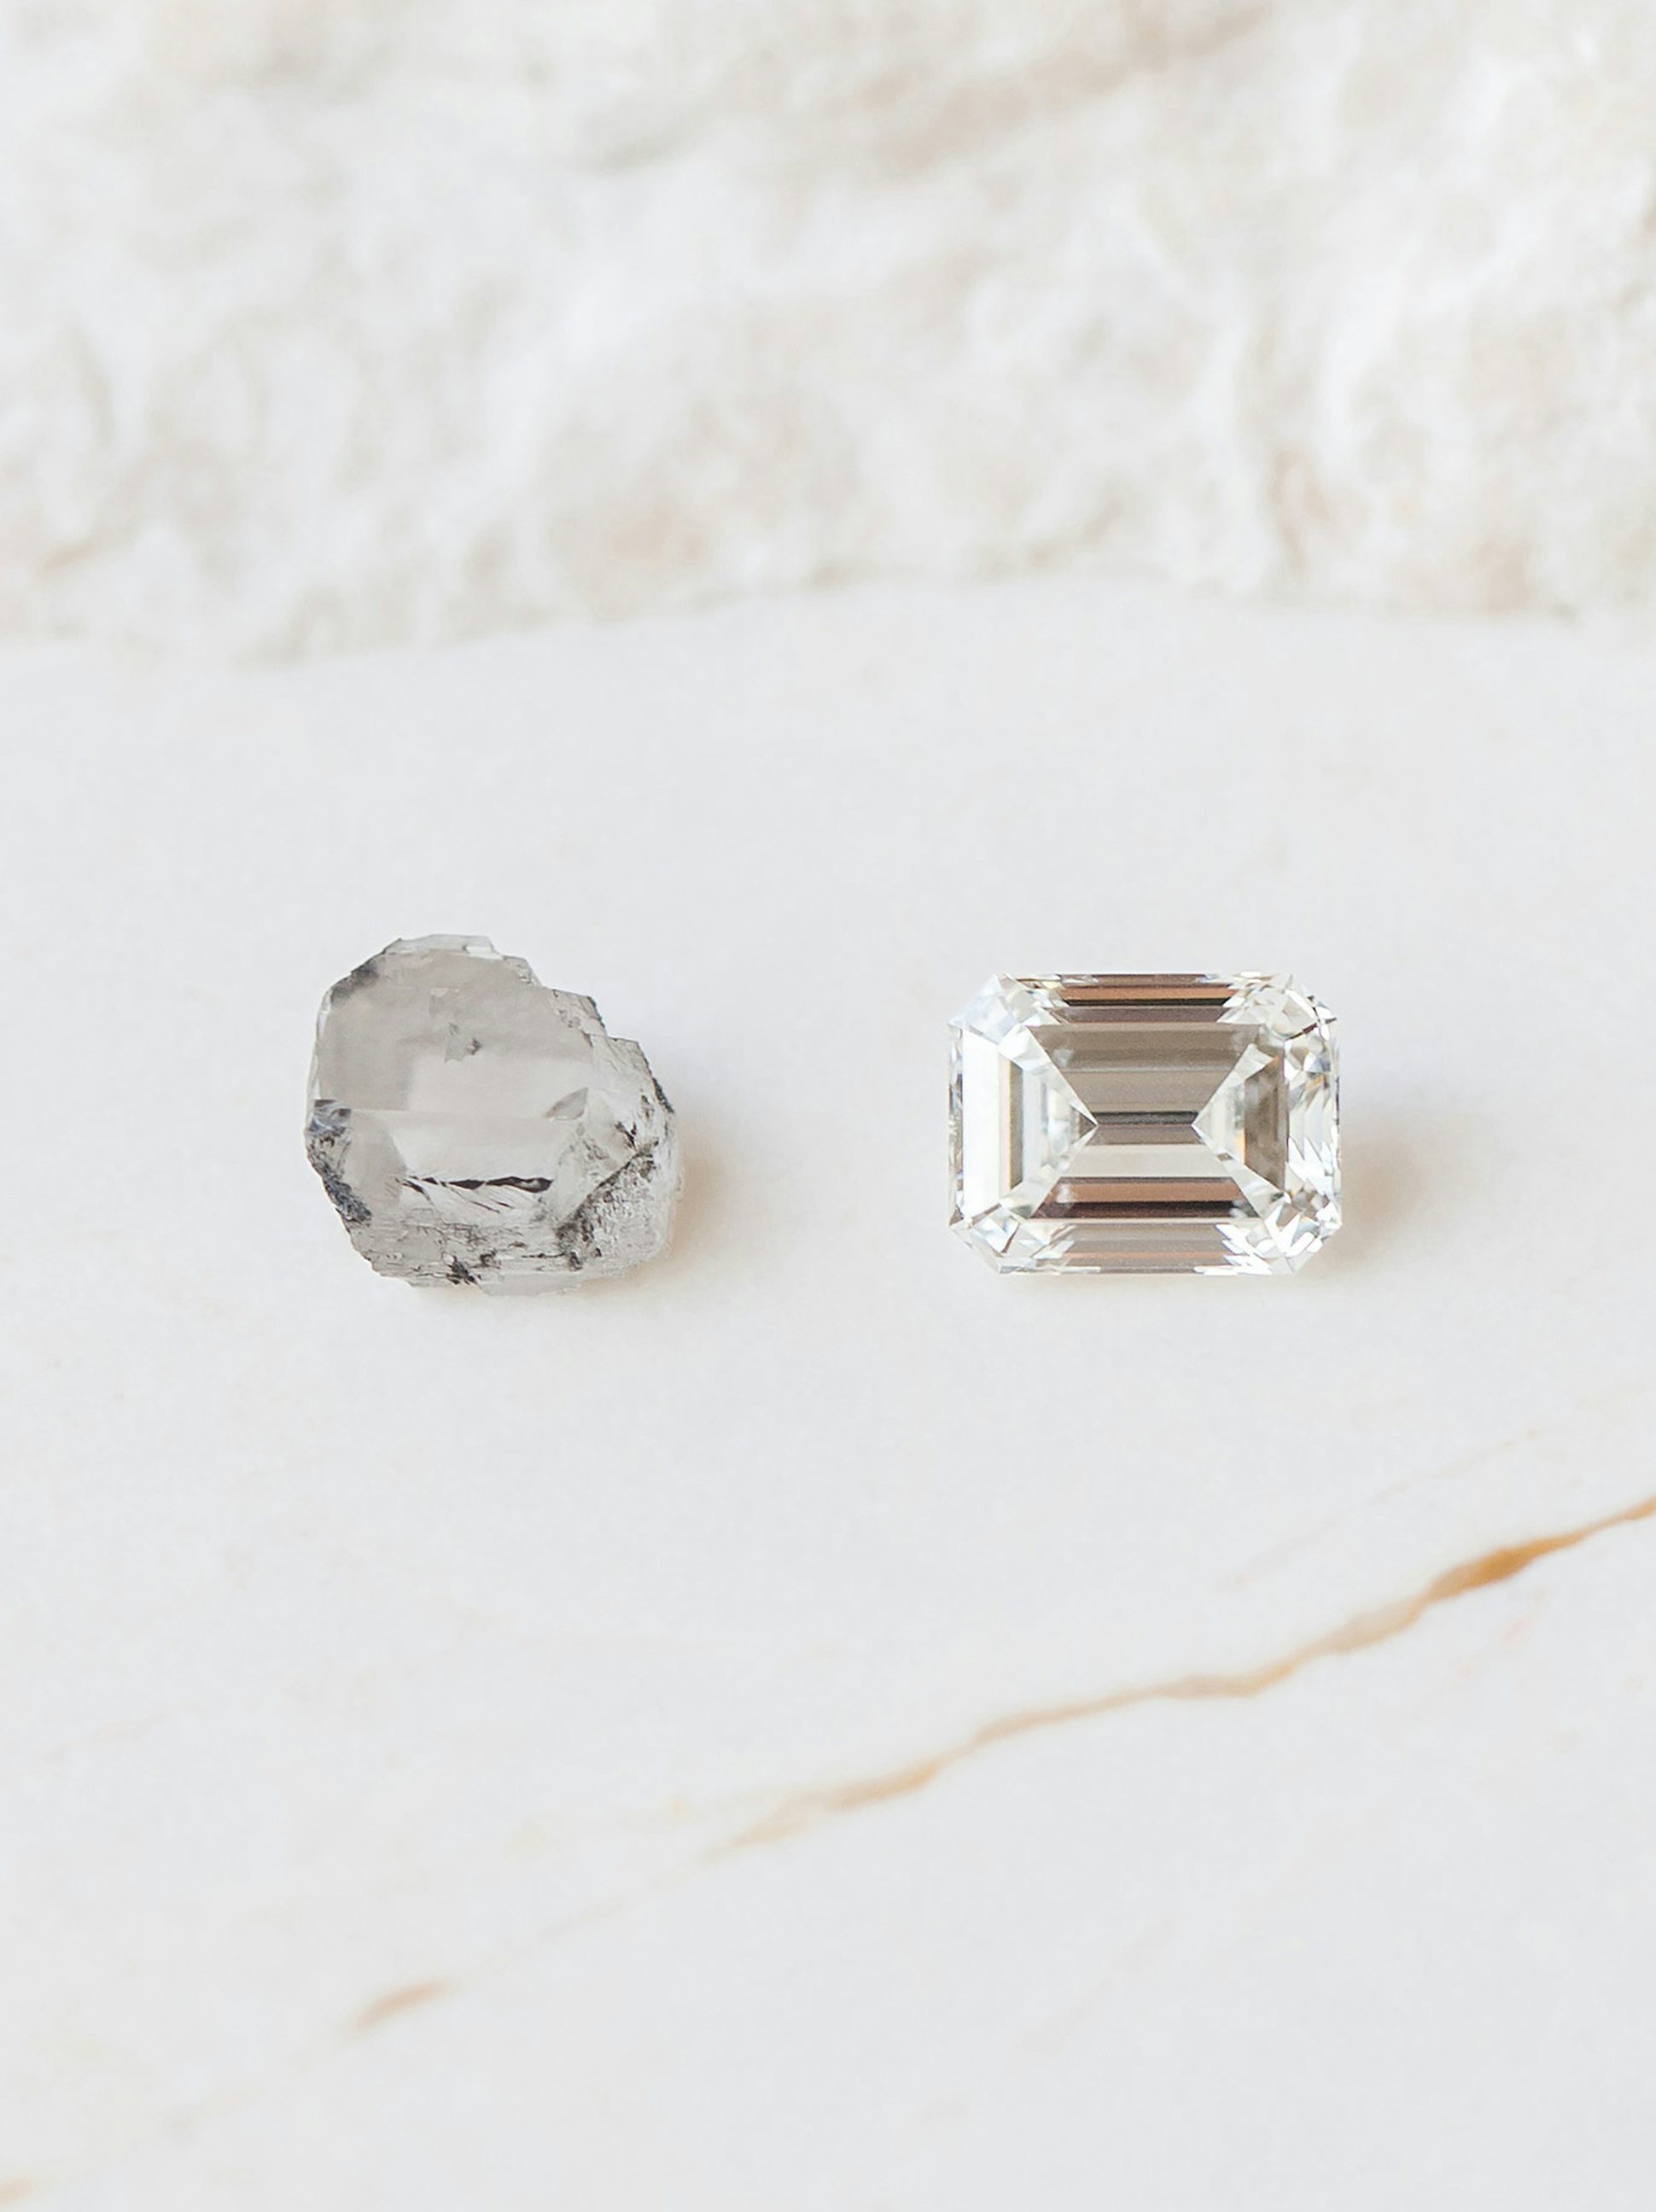 Diamant de synthèse brut et diamant de synthèse taille émeraude - Diamond Foundry